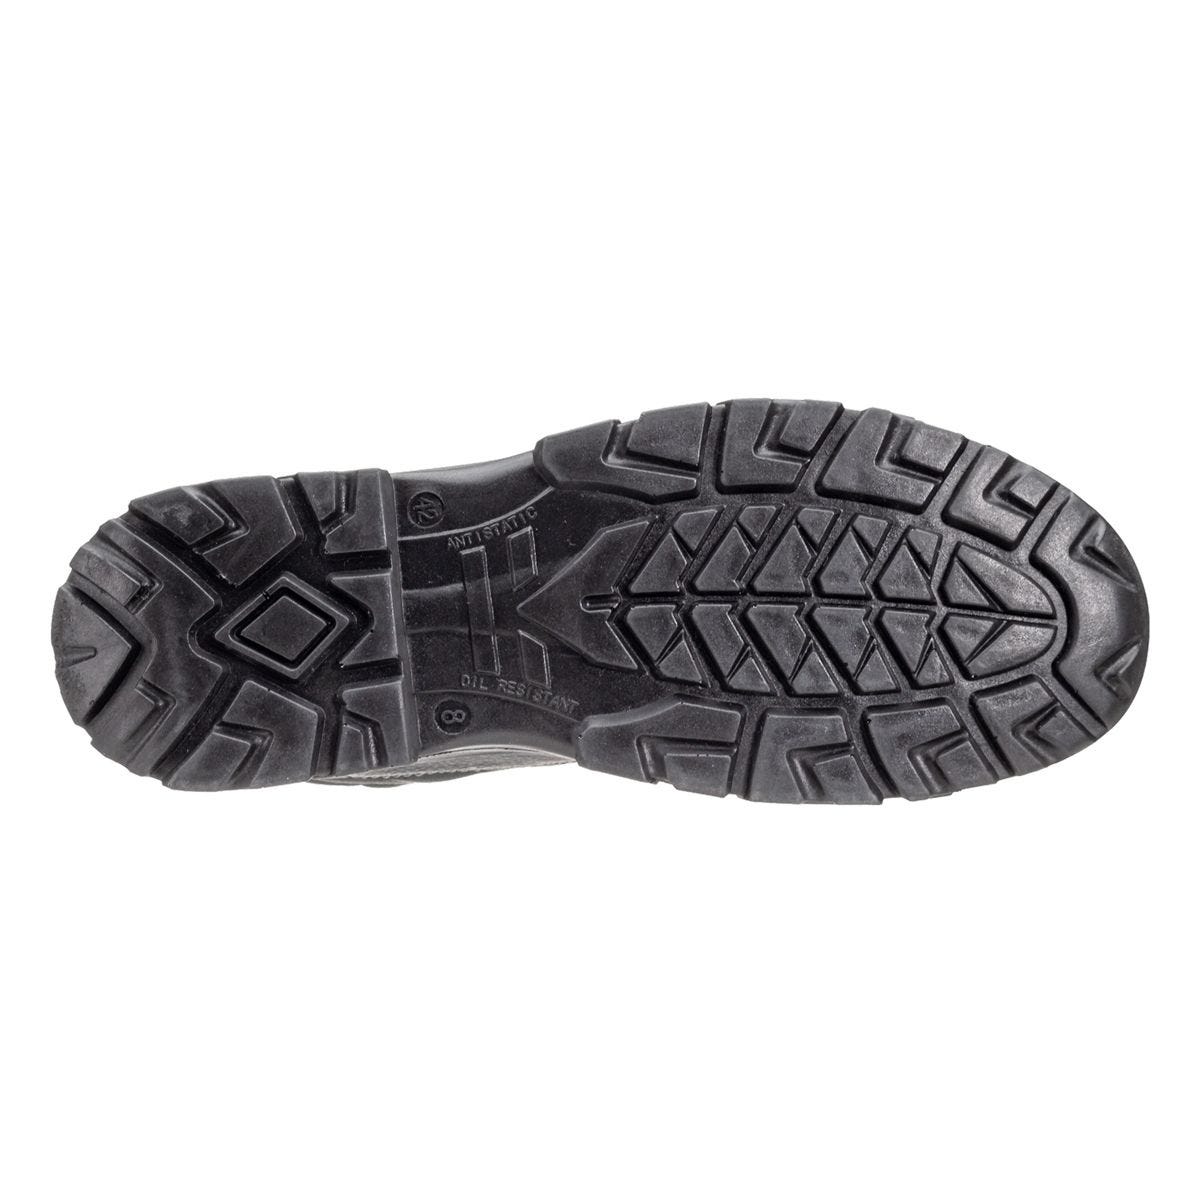 Chaussures de sécurité hautes Azurite II S3 ESD noir - Coverguard - Taille 37 2